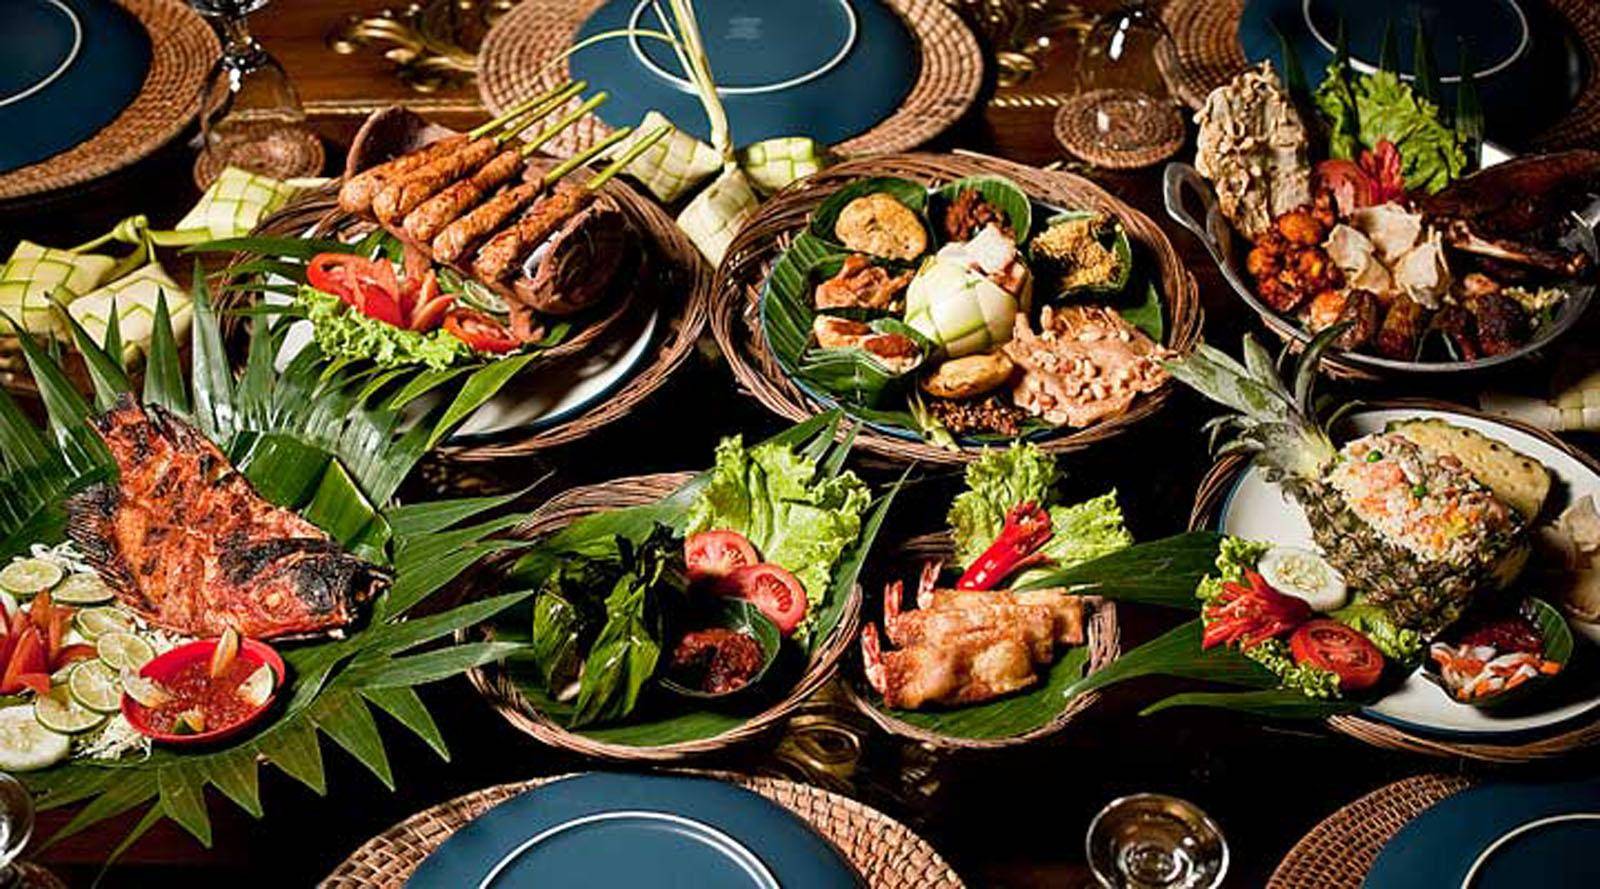 值得一吃再吃 老饕才懂的 5 道印尼国菜 | 印尼餐 | 印尼饮食 | 饮食文化 | 大纪元